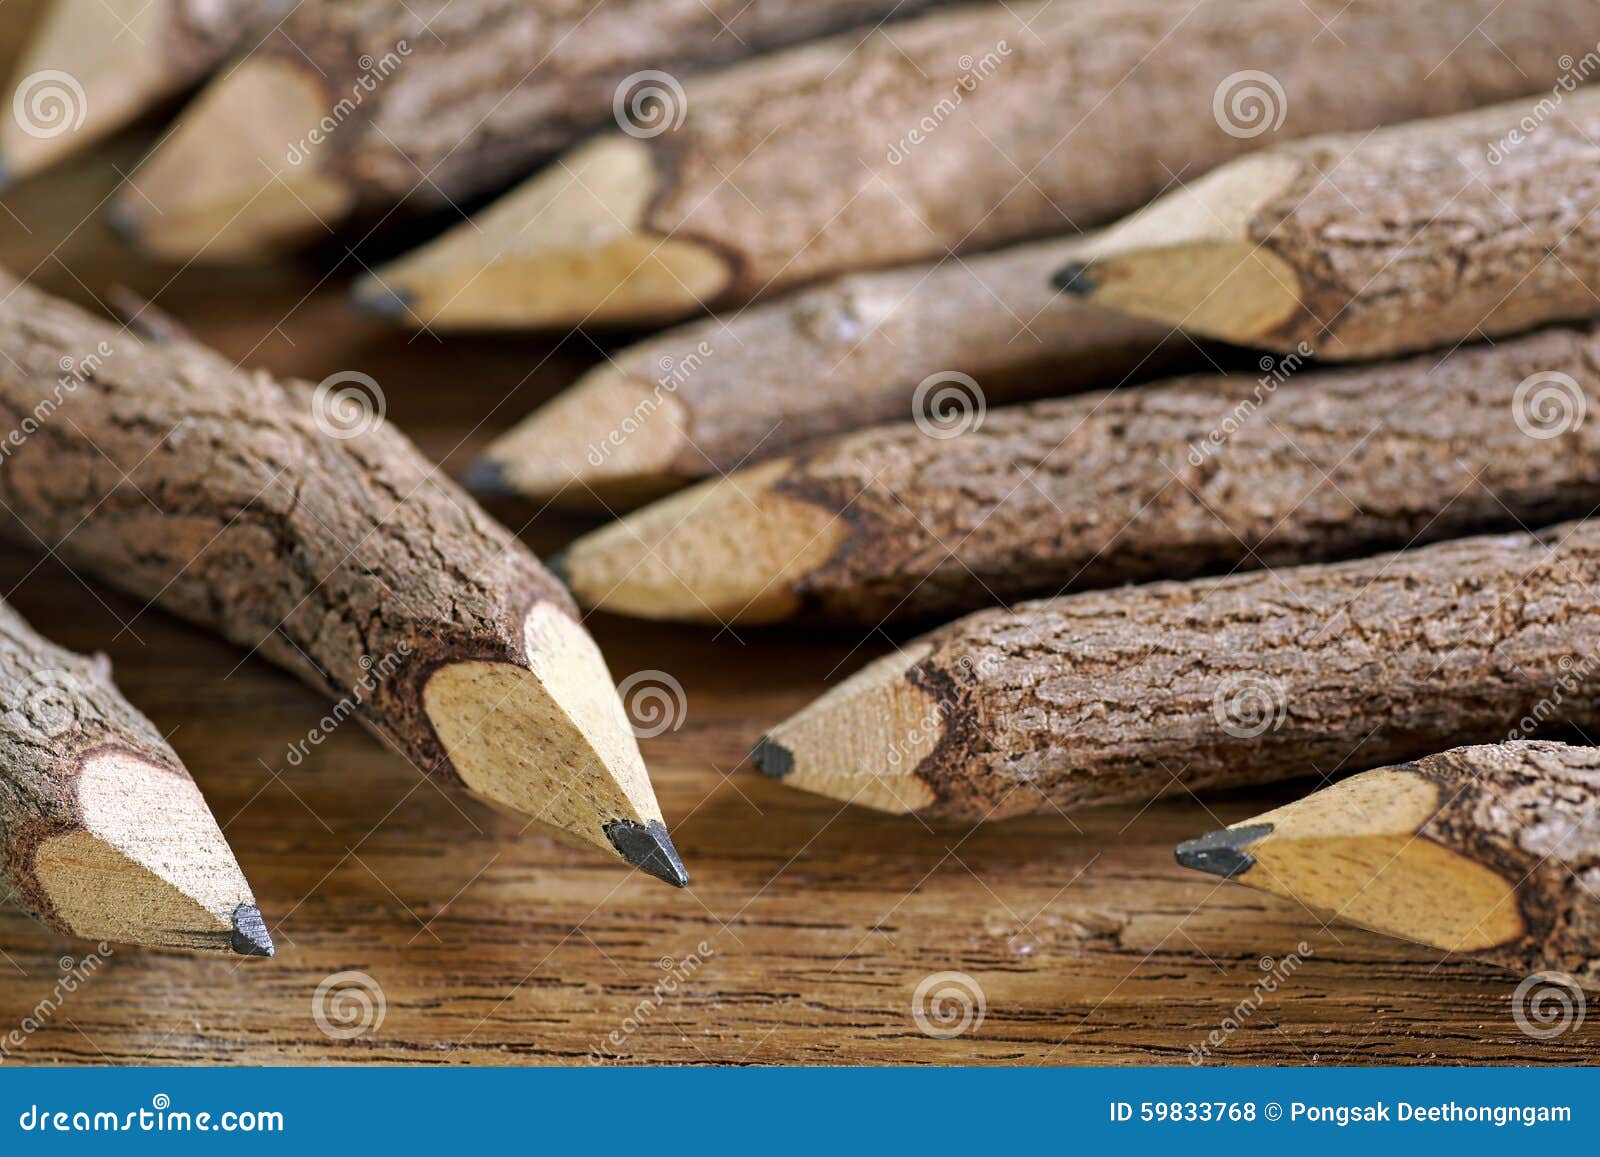 wood pencils